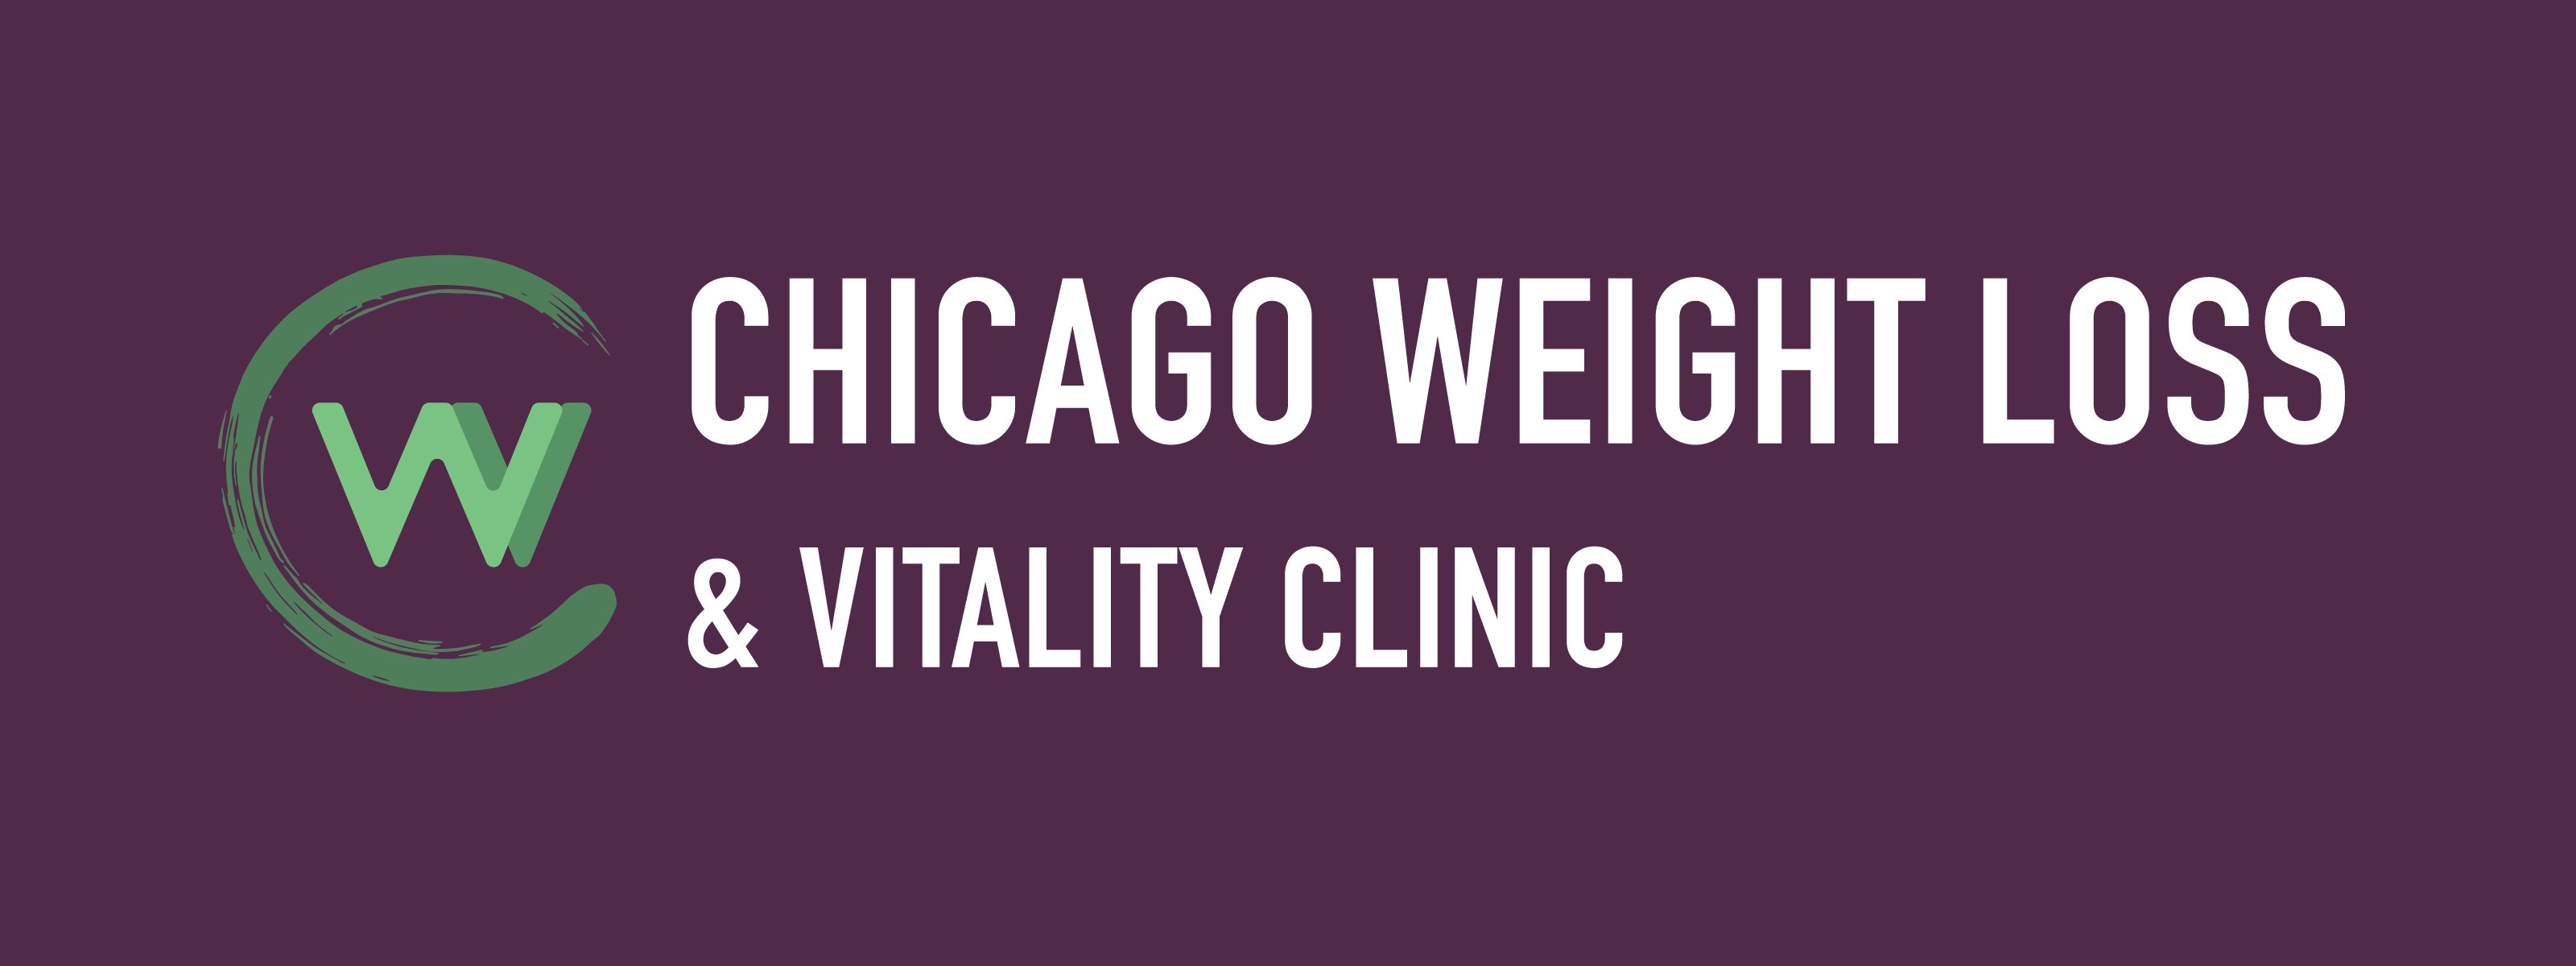 Chicago Weight Loss & Wellness Clinics